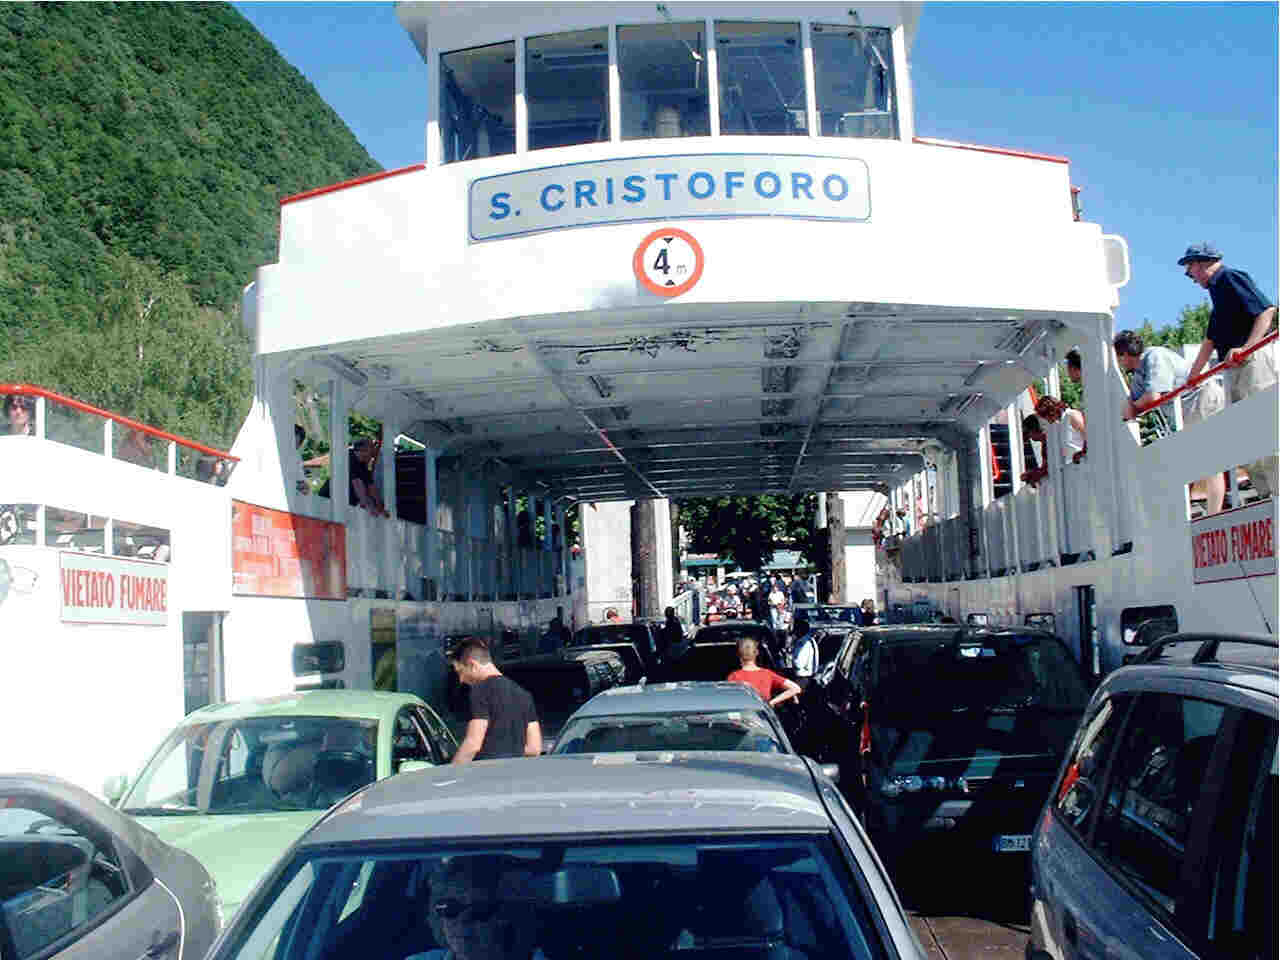 Ferry across Lake Maggiore